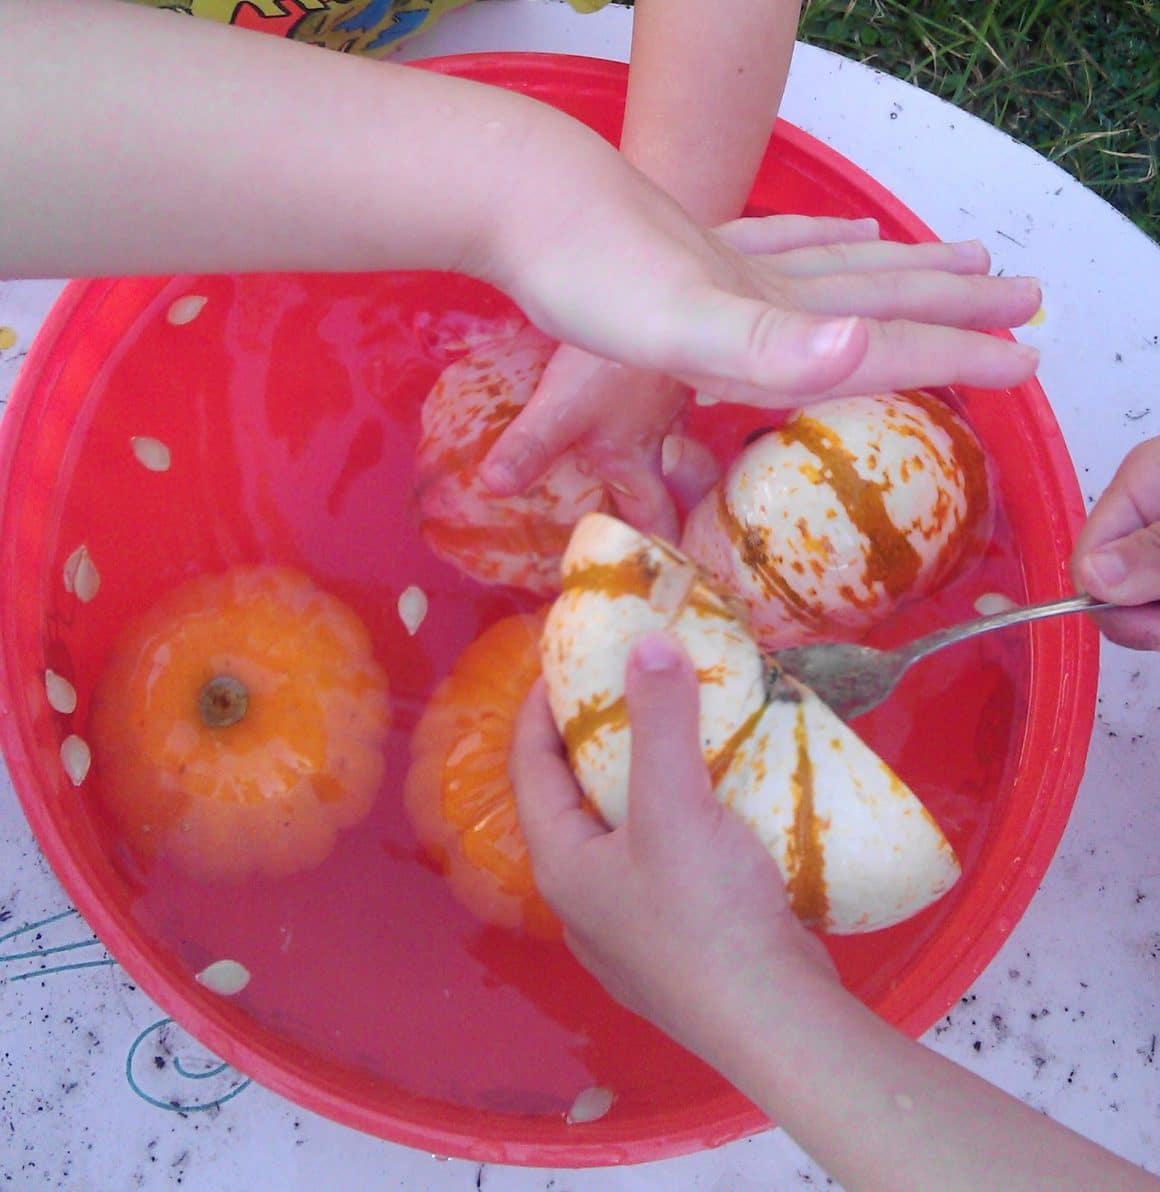 PHYSICS pumpkin experiment